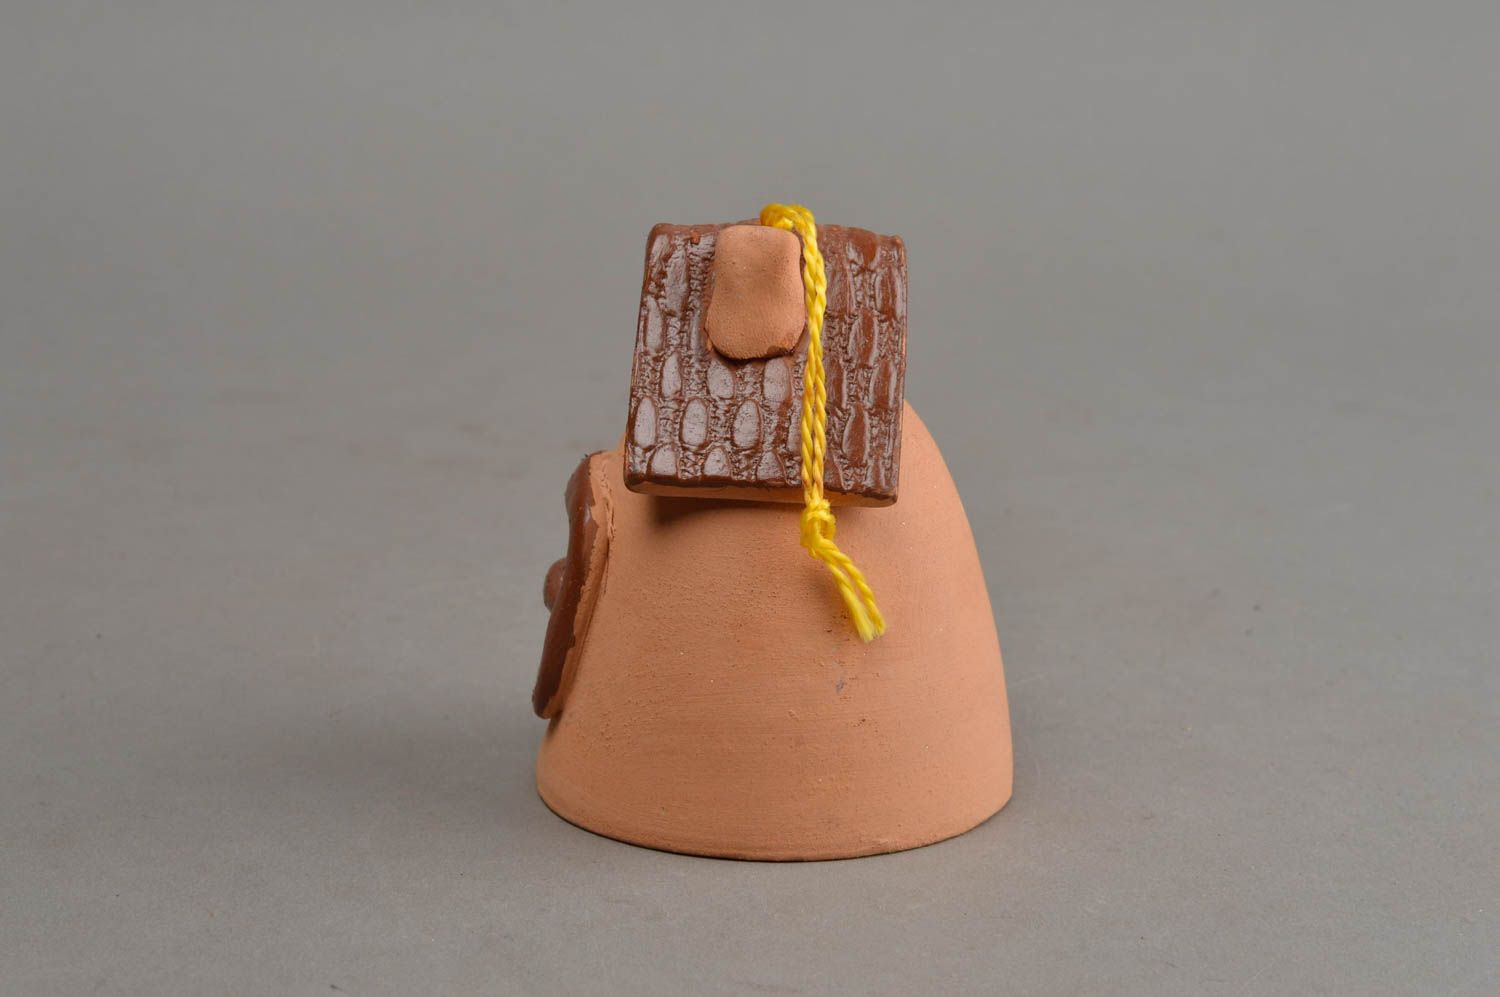 Campana de cerámica hecha a meno elemento decorativo souvenir original foto 3